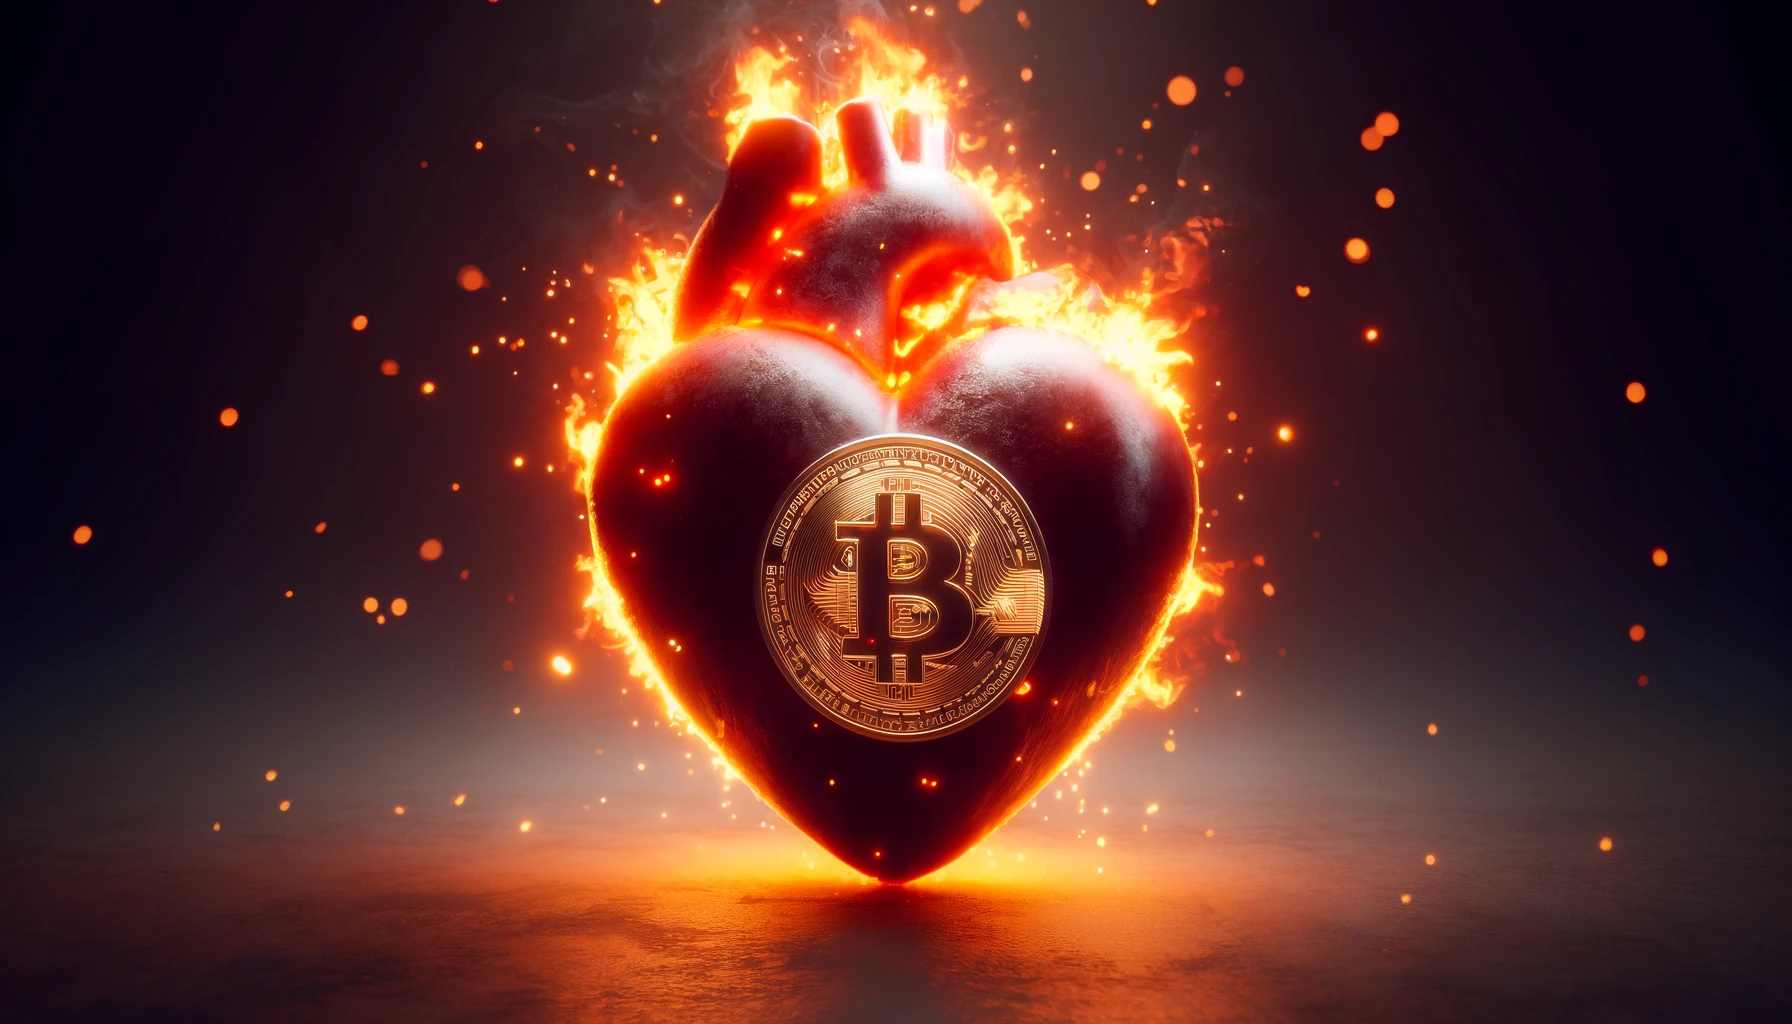 płonące serce z monetą bitcoin w centralnej części na ciemnym tle, oświetlanym blaskiem ognia